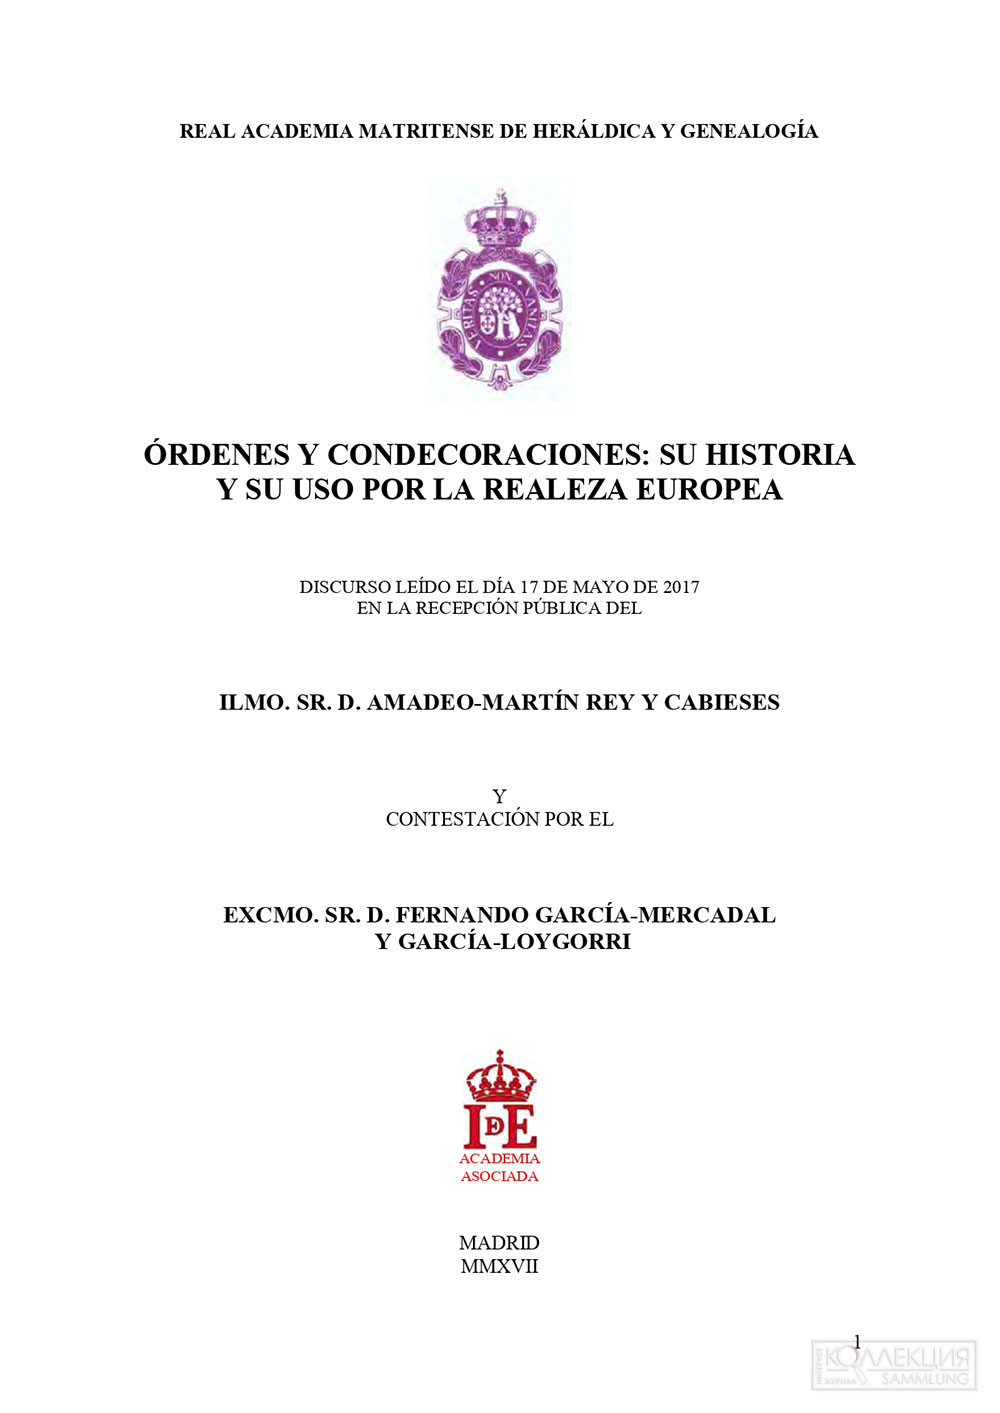 ILMO.SR.D. Amadeo-Martin Rey Y Cabieses "ÓRDENES Y CONDECORACIONES: SU HISTORIA Y SU USO POR LA REALEZA EUROPEA"